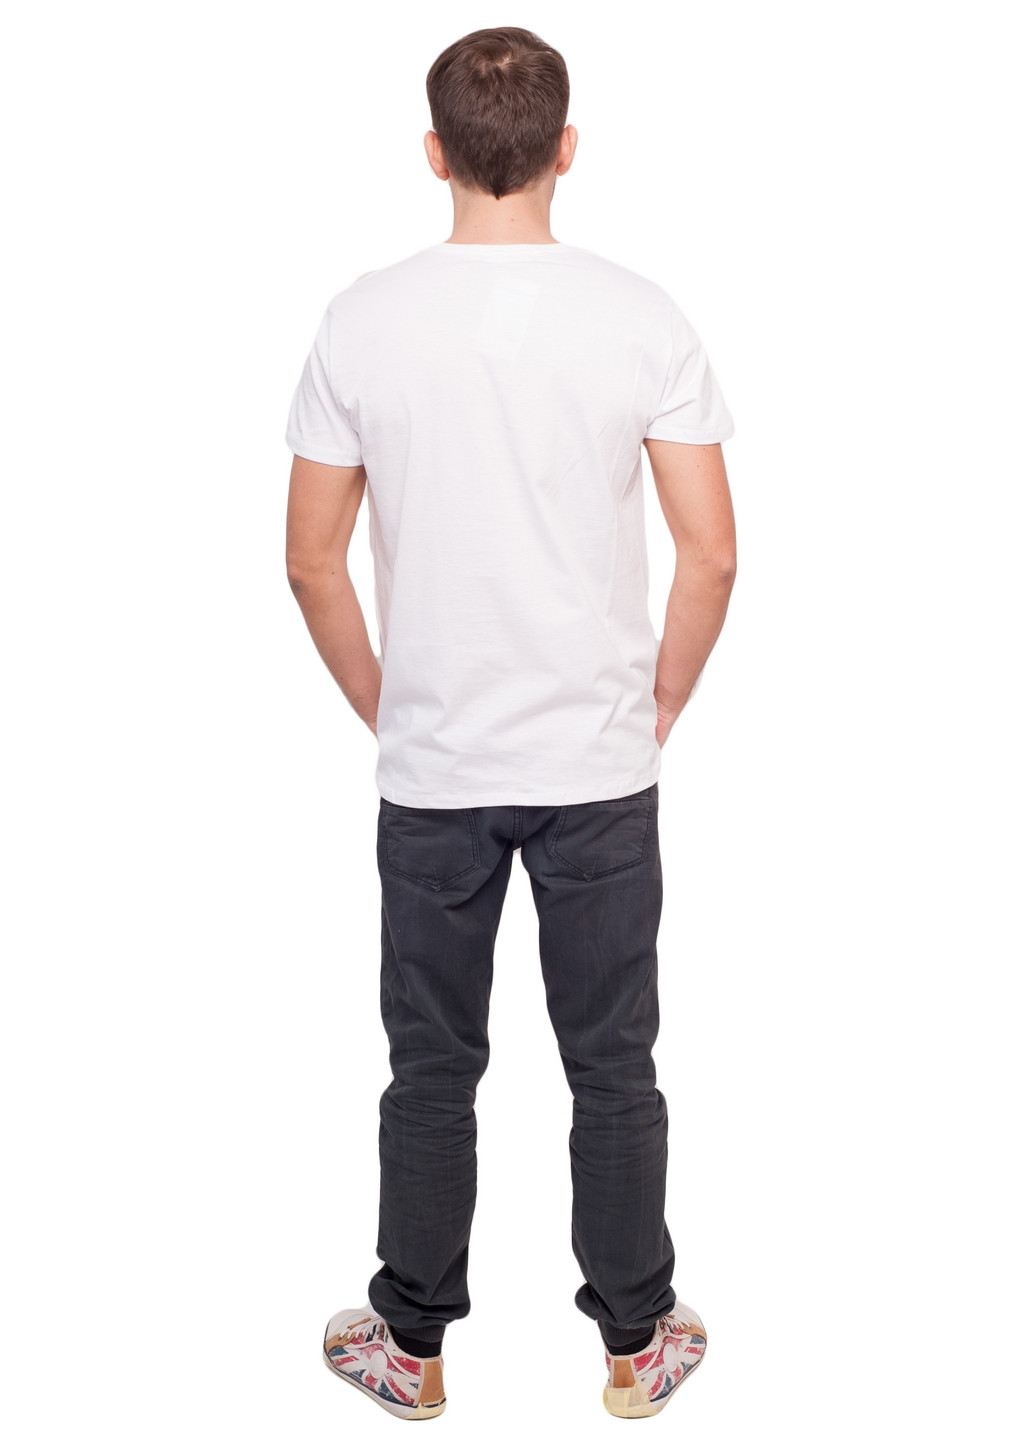 Белая футболка мужская Наталюкс 11-1312